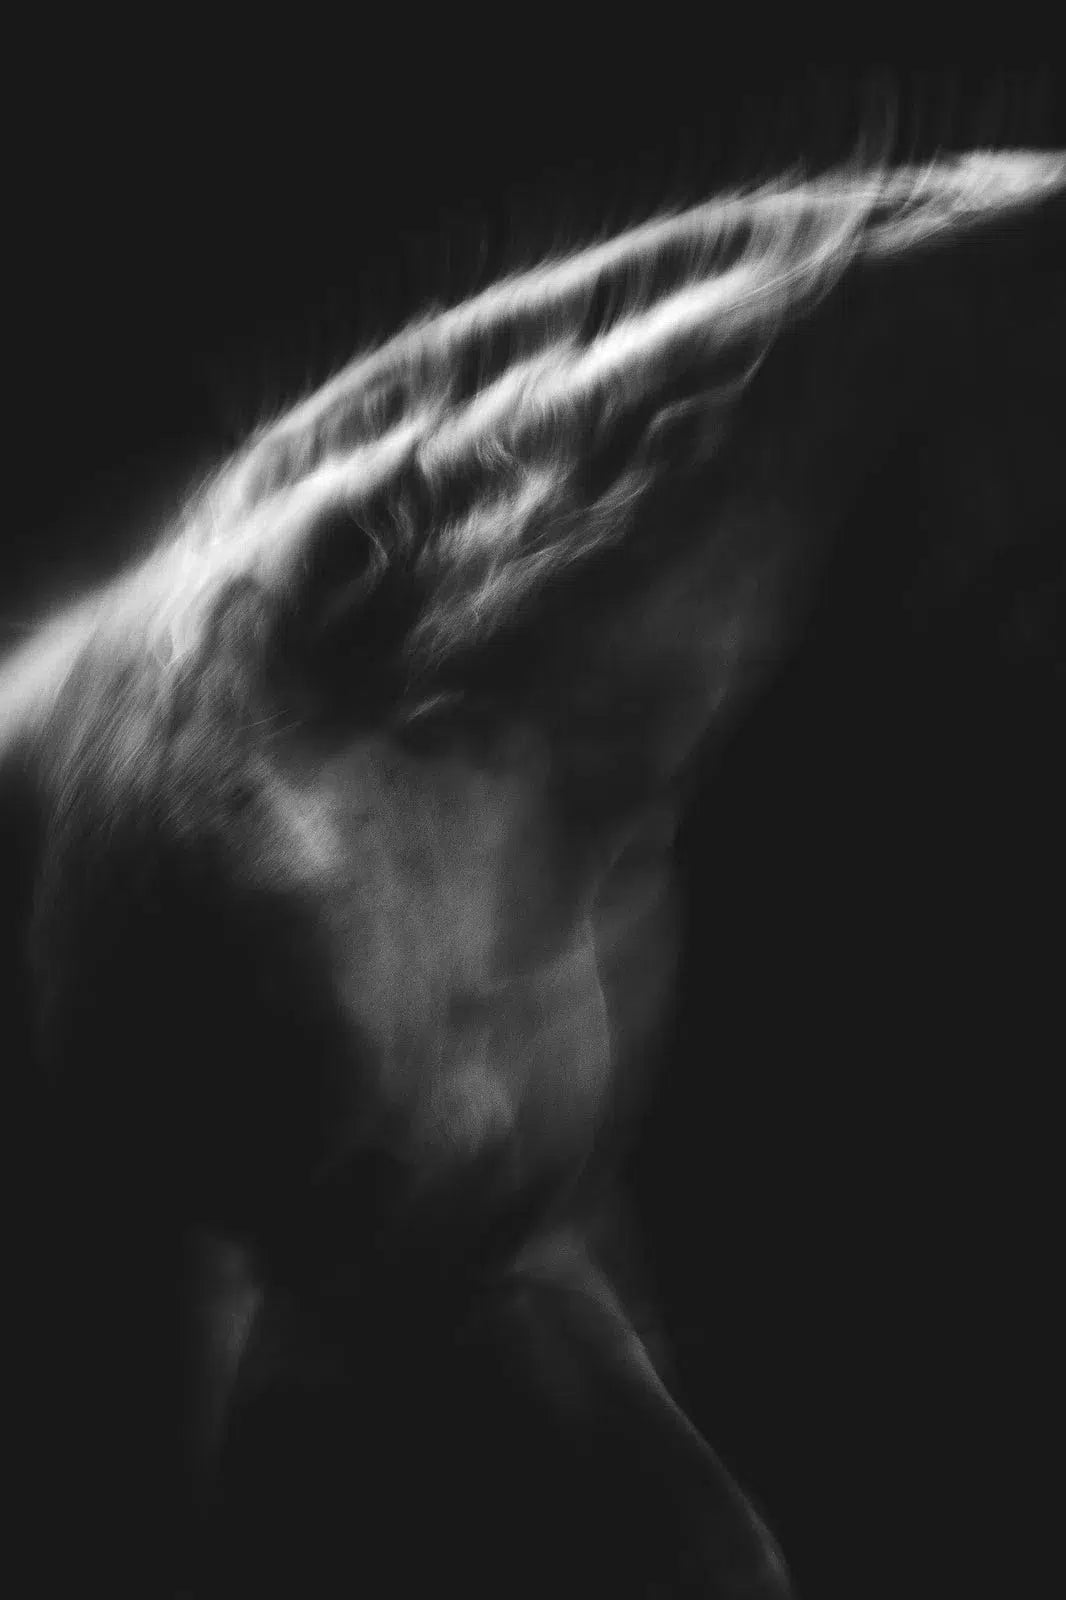 Spirit in the Dark 2, by Anna Archinger-PurePhoto